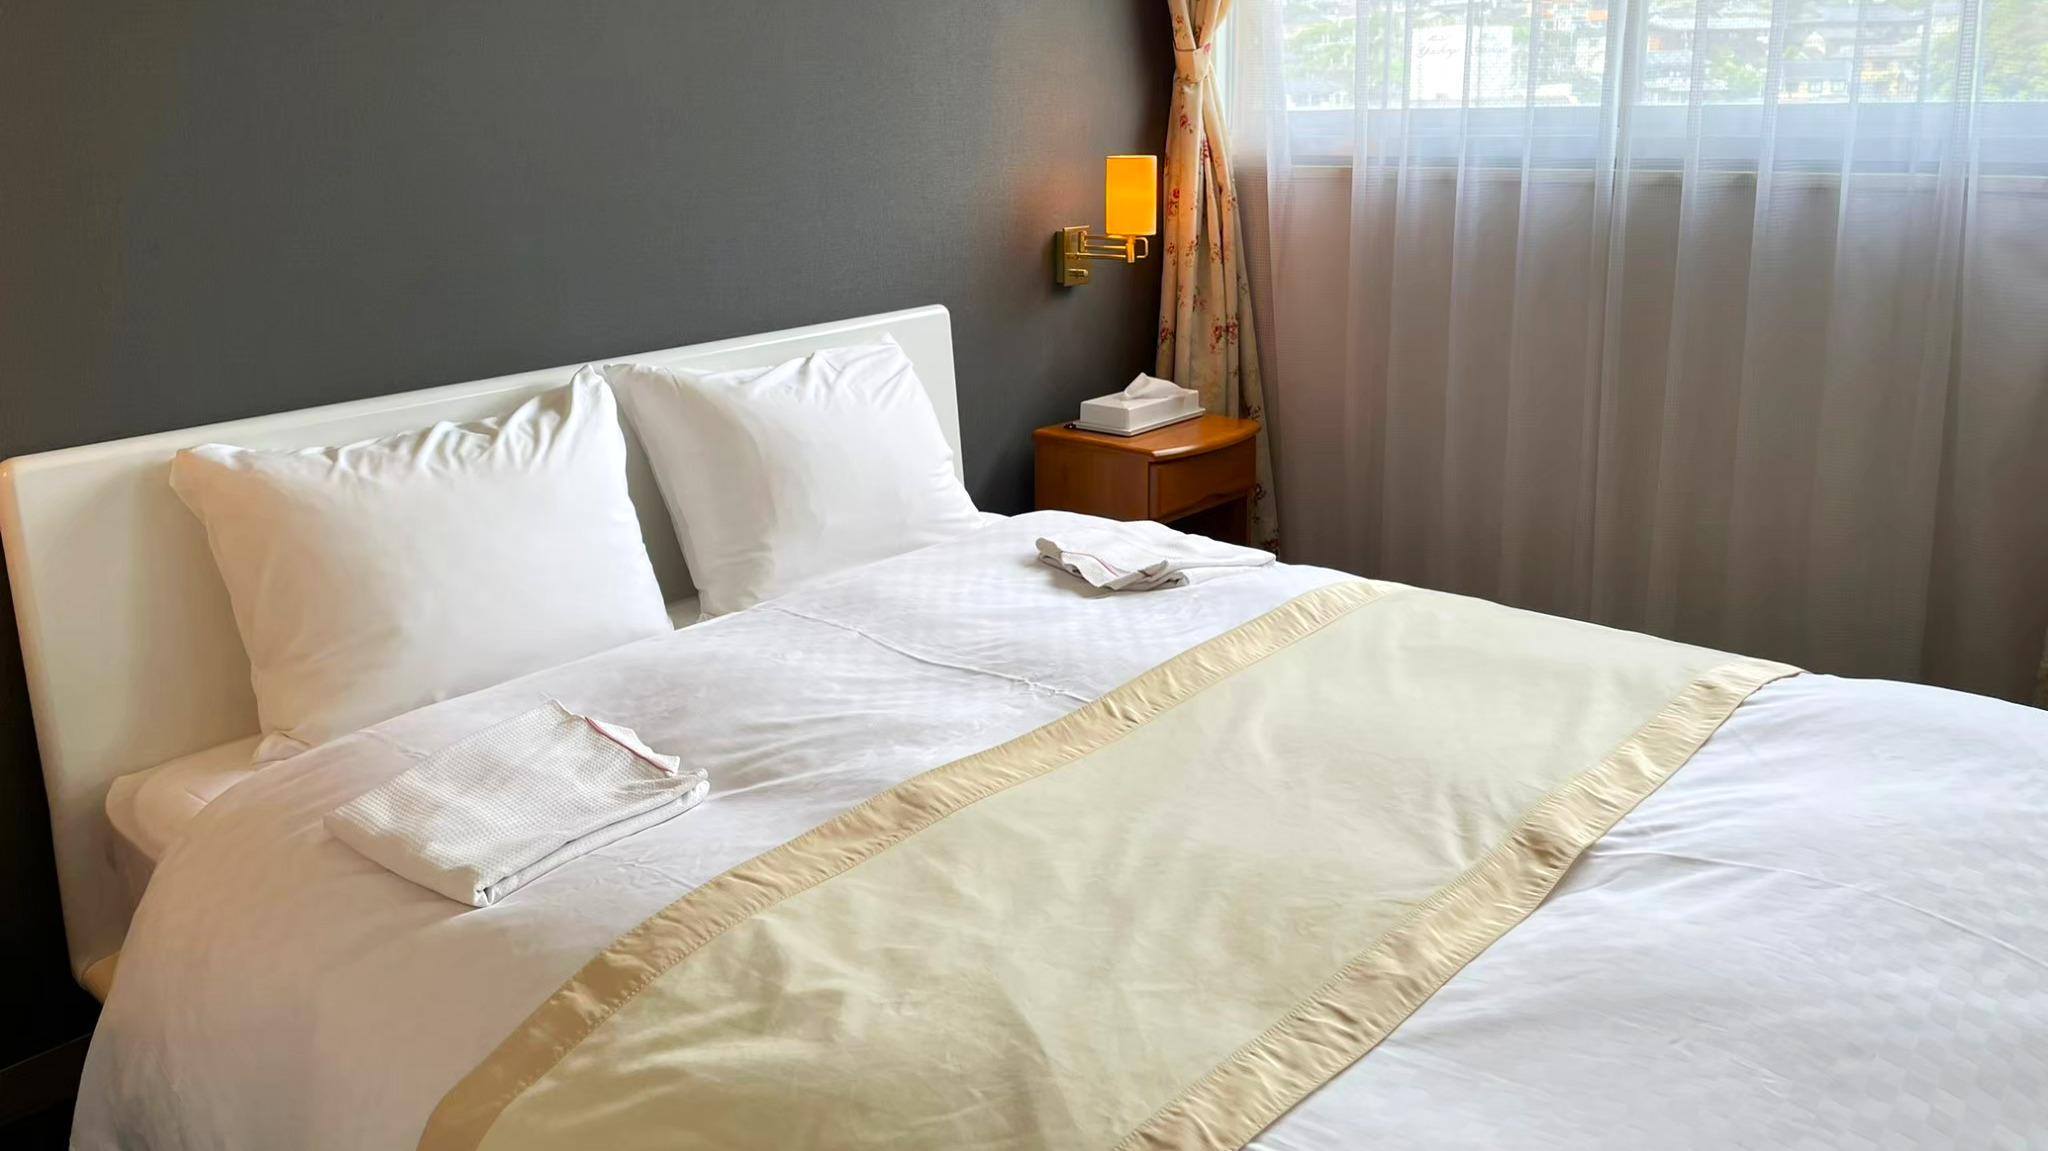 日本人の寝心地を追求した『フランスベッド』を使用